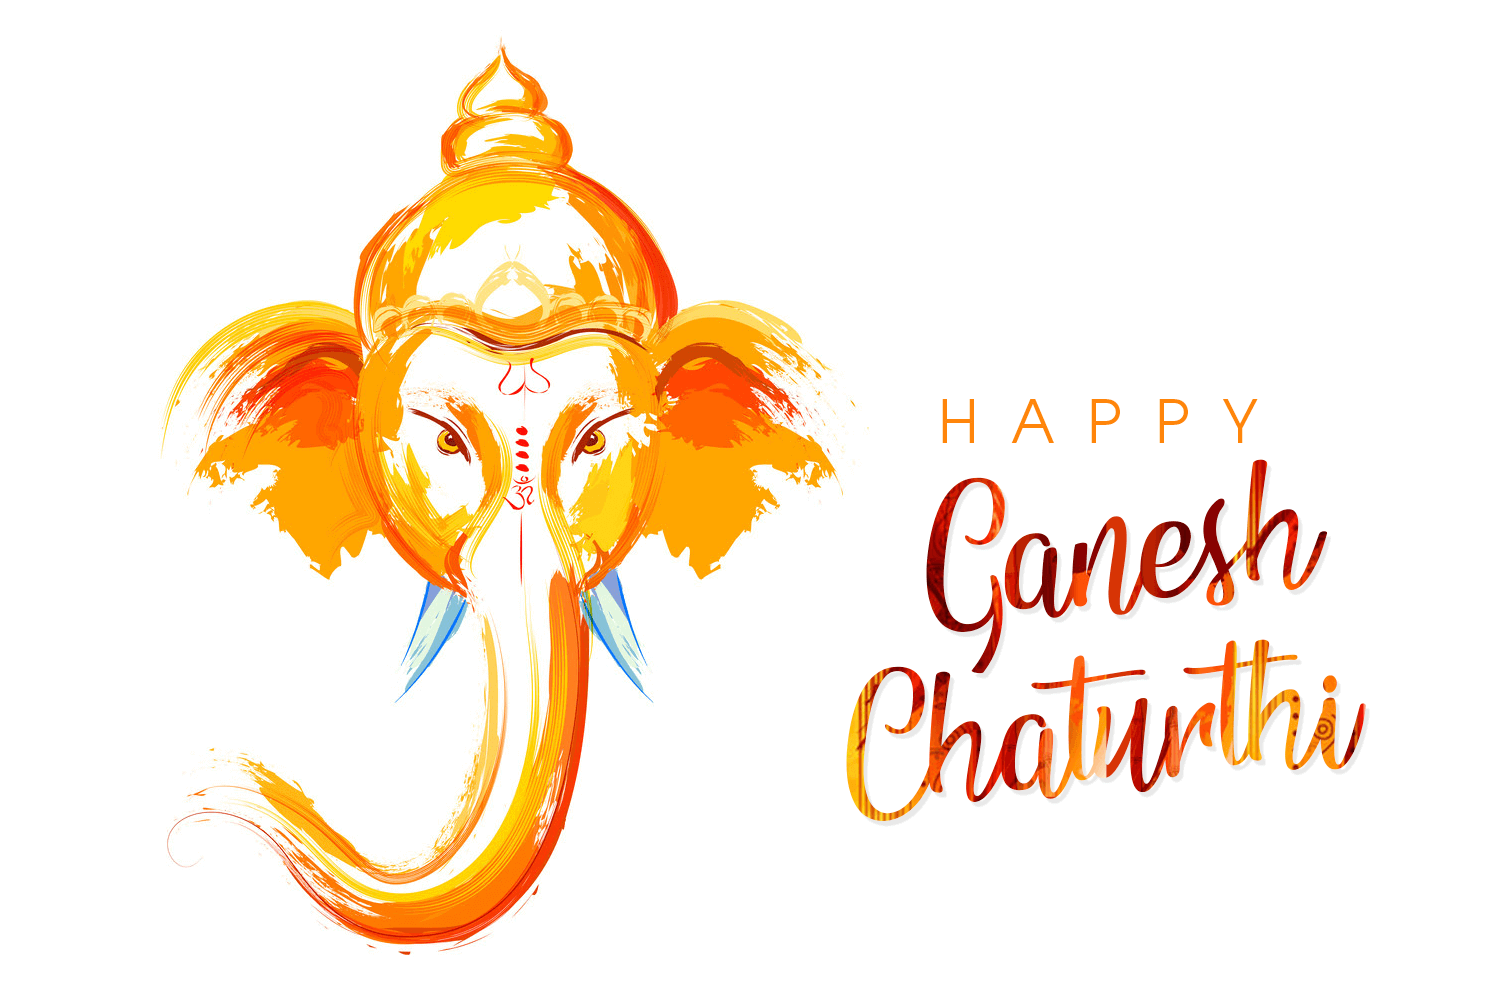 Wish everyone Happy Ganesh Chaturthi